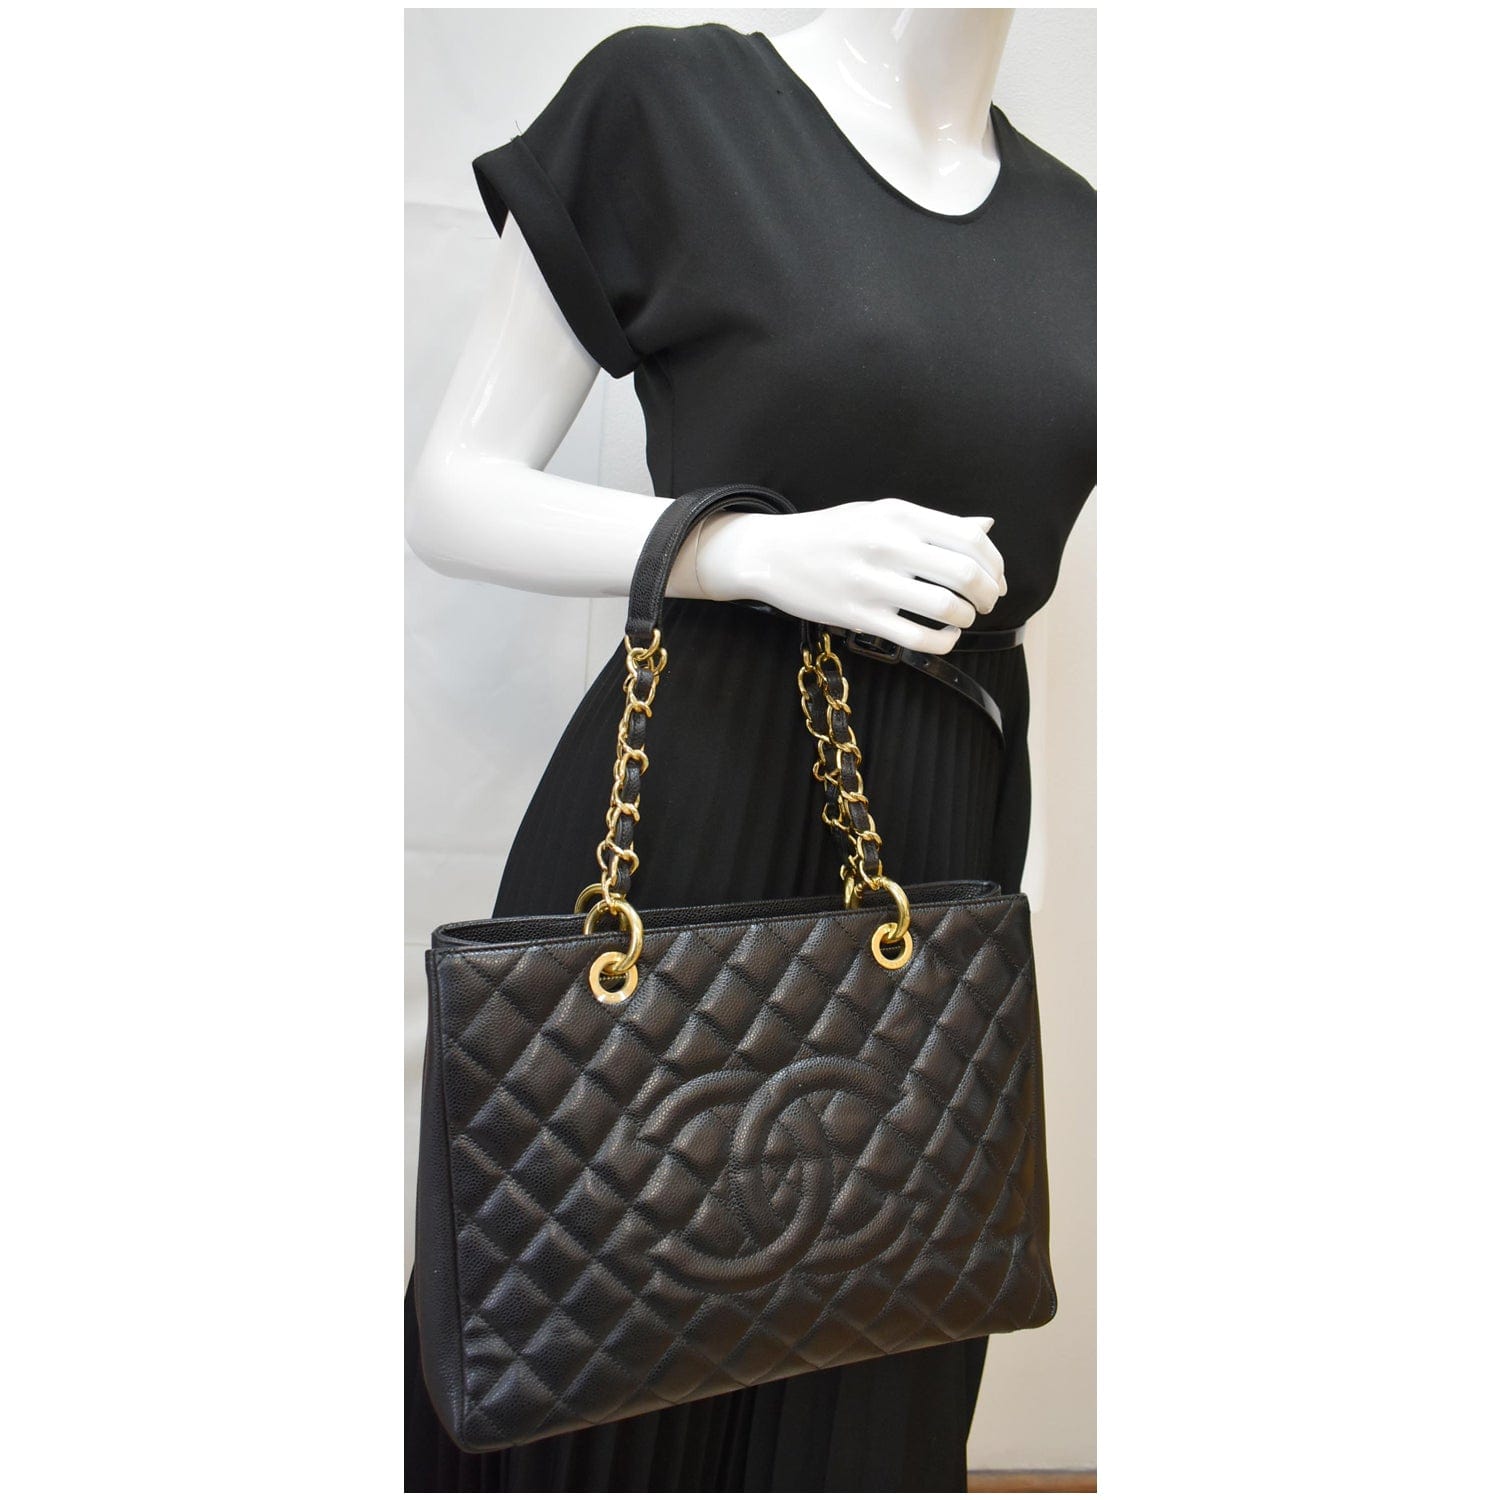 12 Chanel GST bag ideas  chanel gst, chanel, chanel handbags